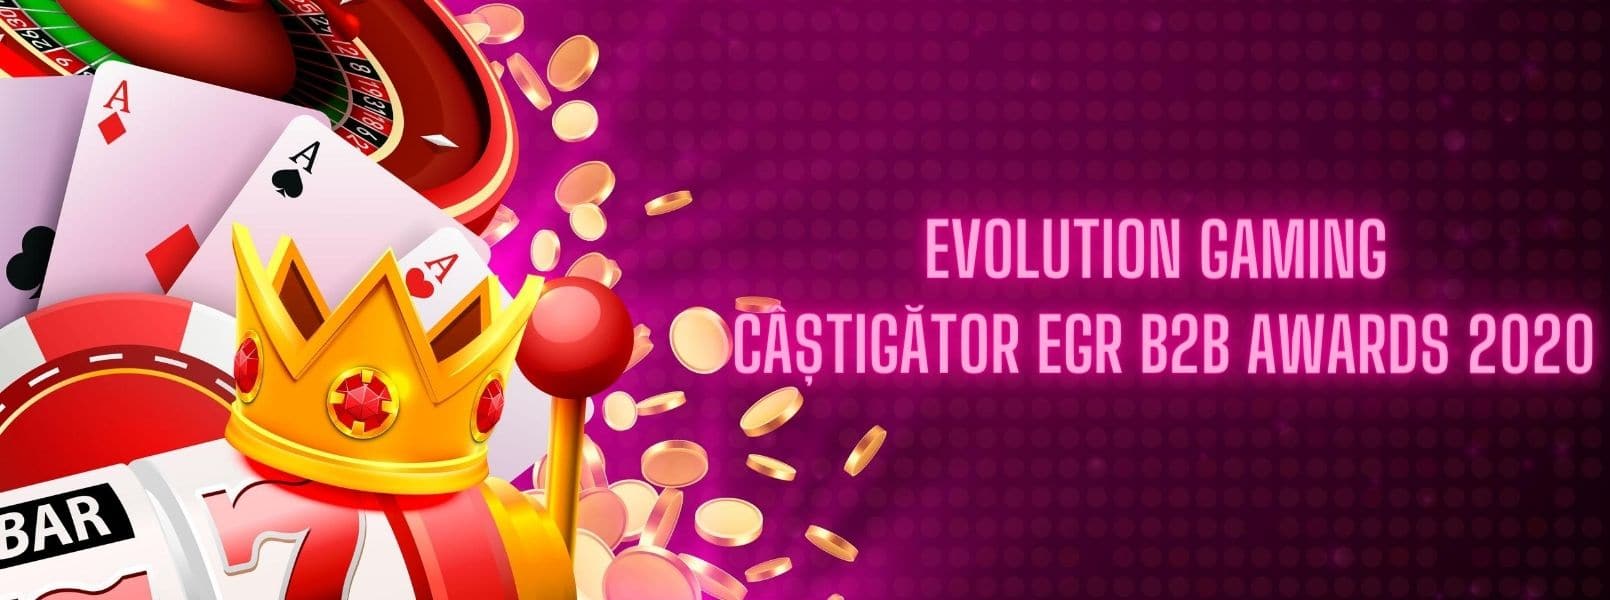 Evolution Gamining a castigat EGR B2B Awards 2020